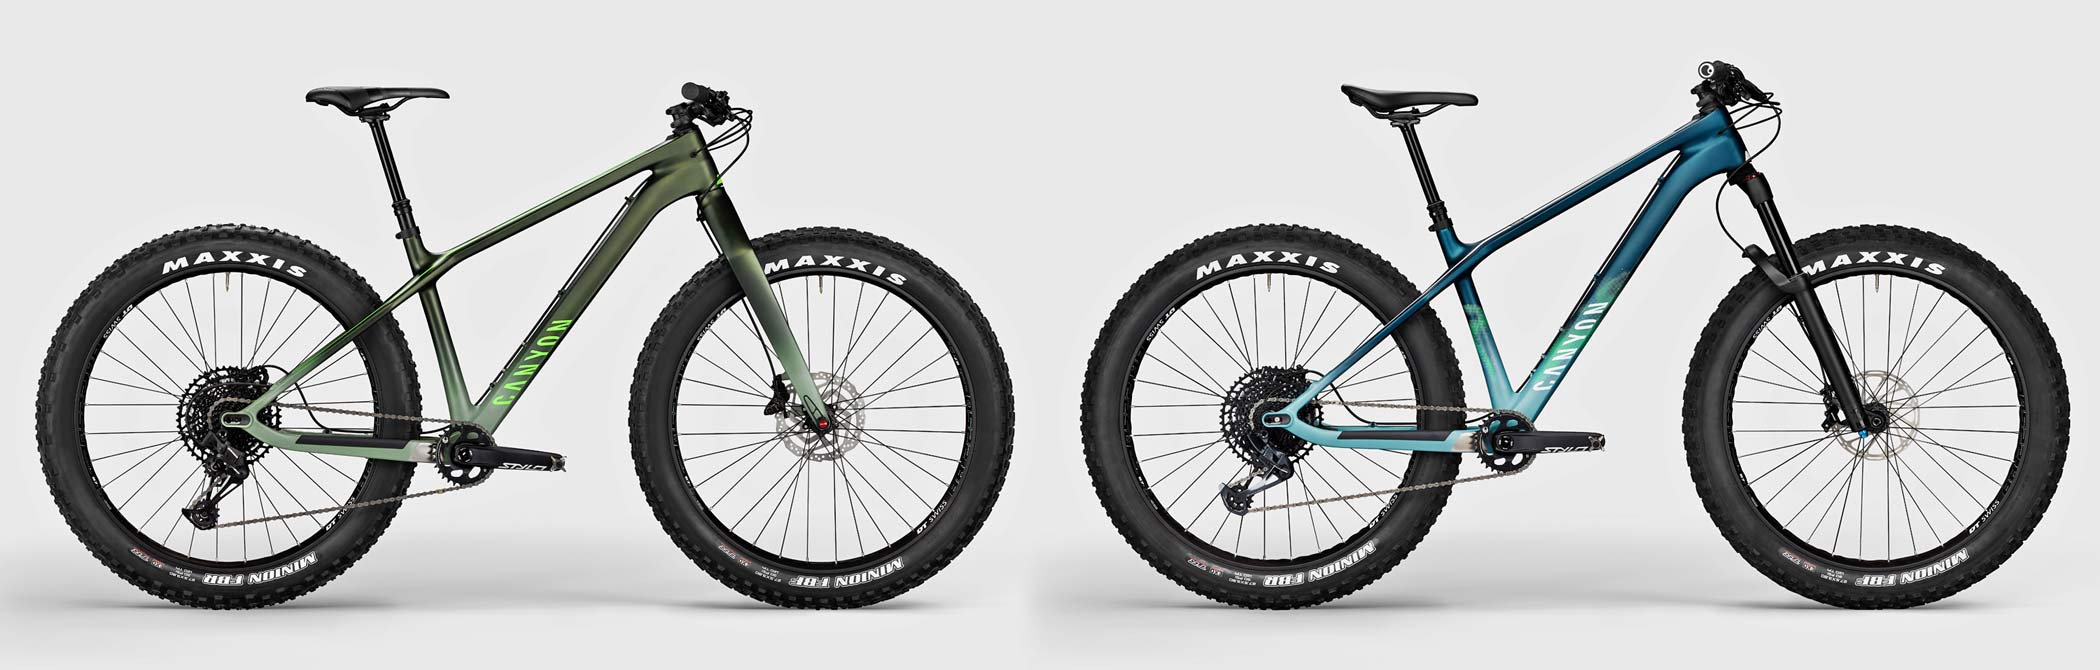 2021 Canyon Dude carbon fat bike goes 27.5x3.8", CF 8 & CF9